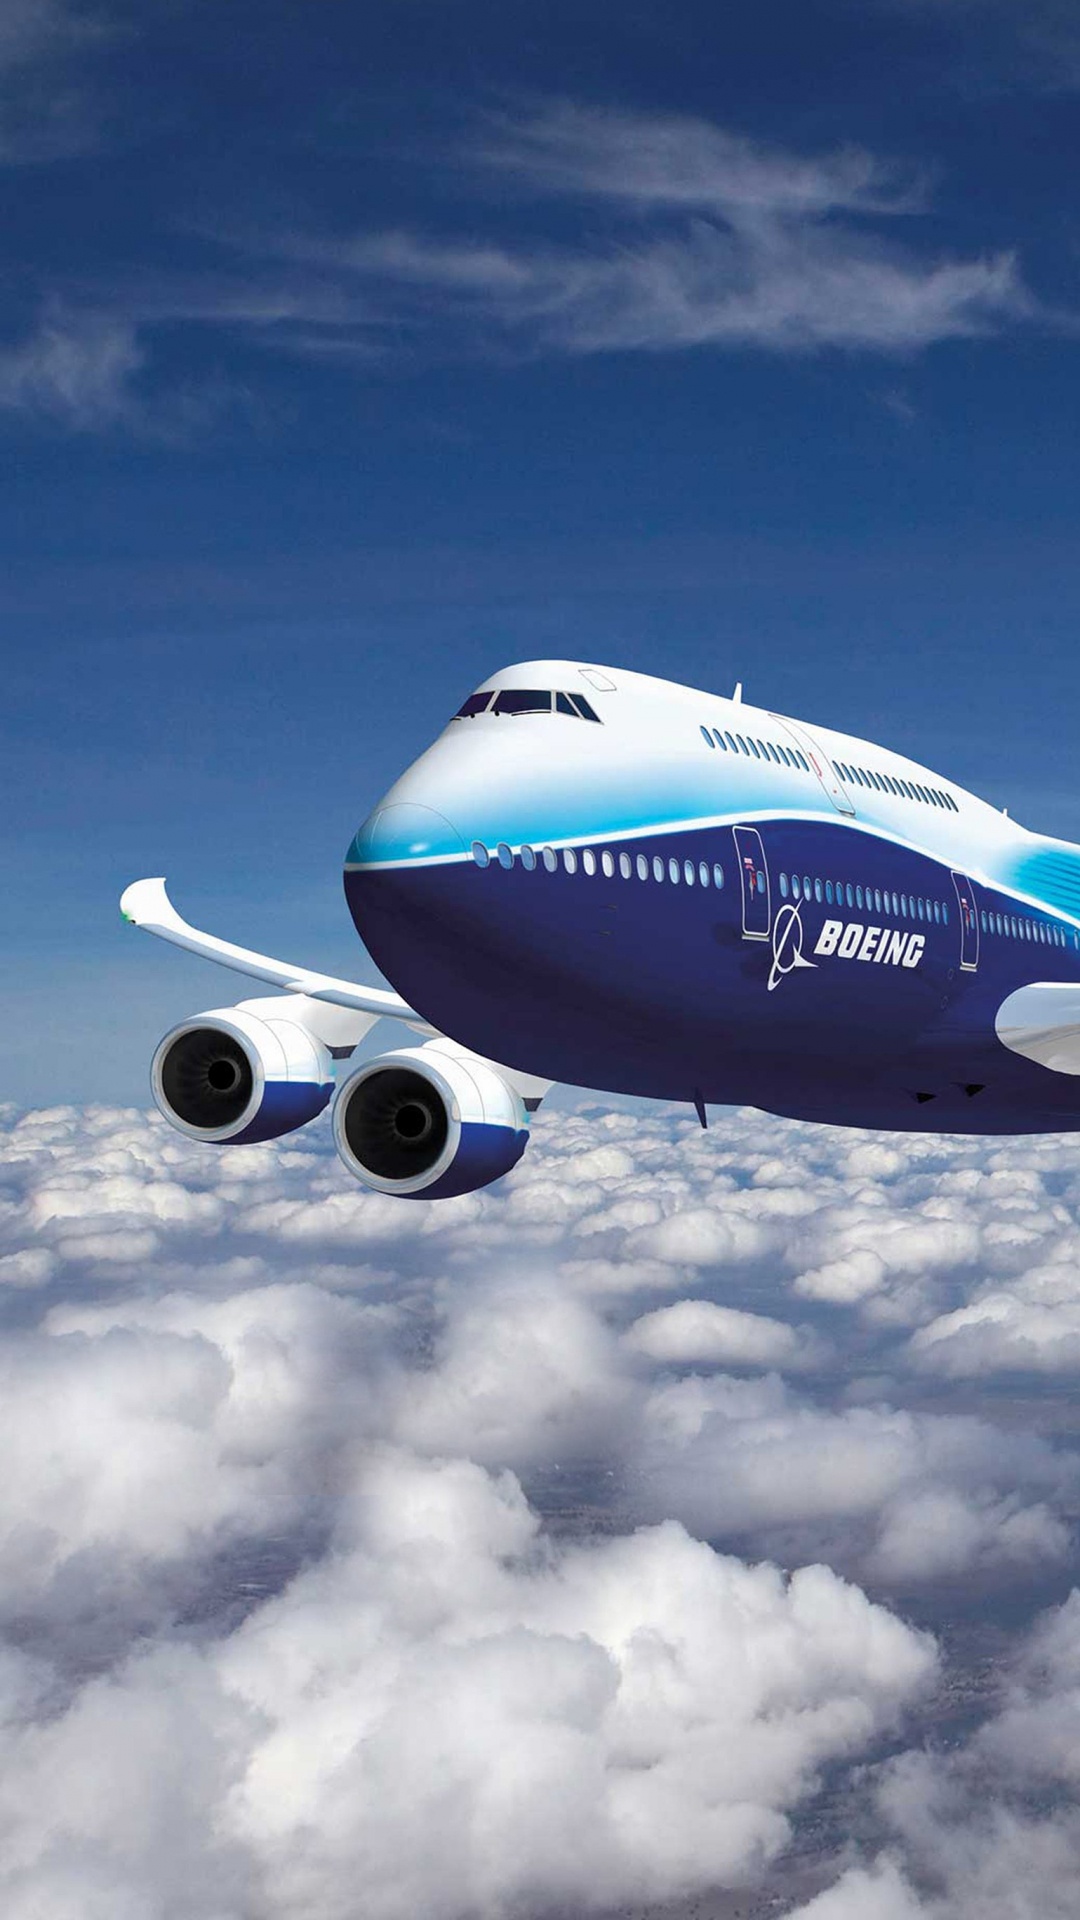 Weißes Und Blaues Flugzeug, Das Tagsüber Unter Blauem Himmel Fliegt. Wallpaper in 1080x1920 Resolution